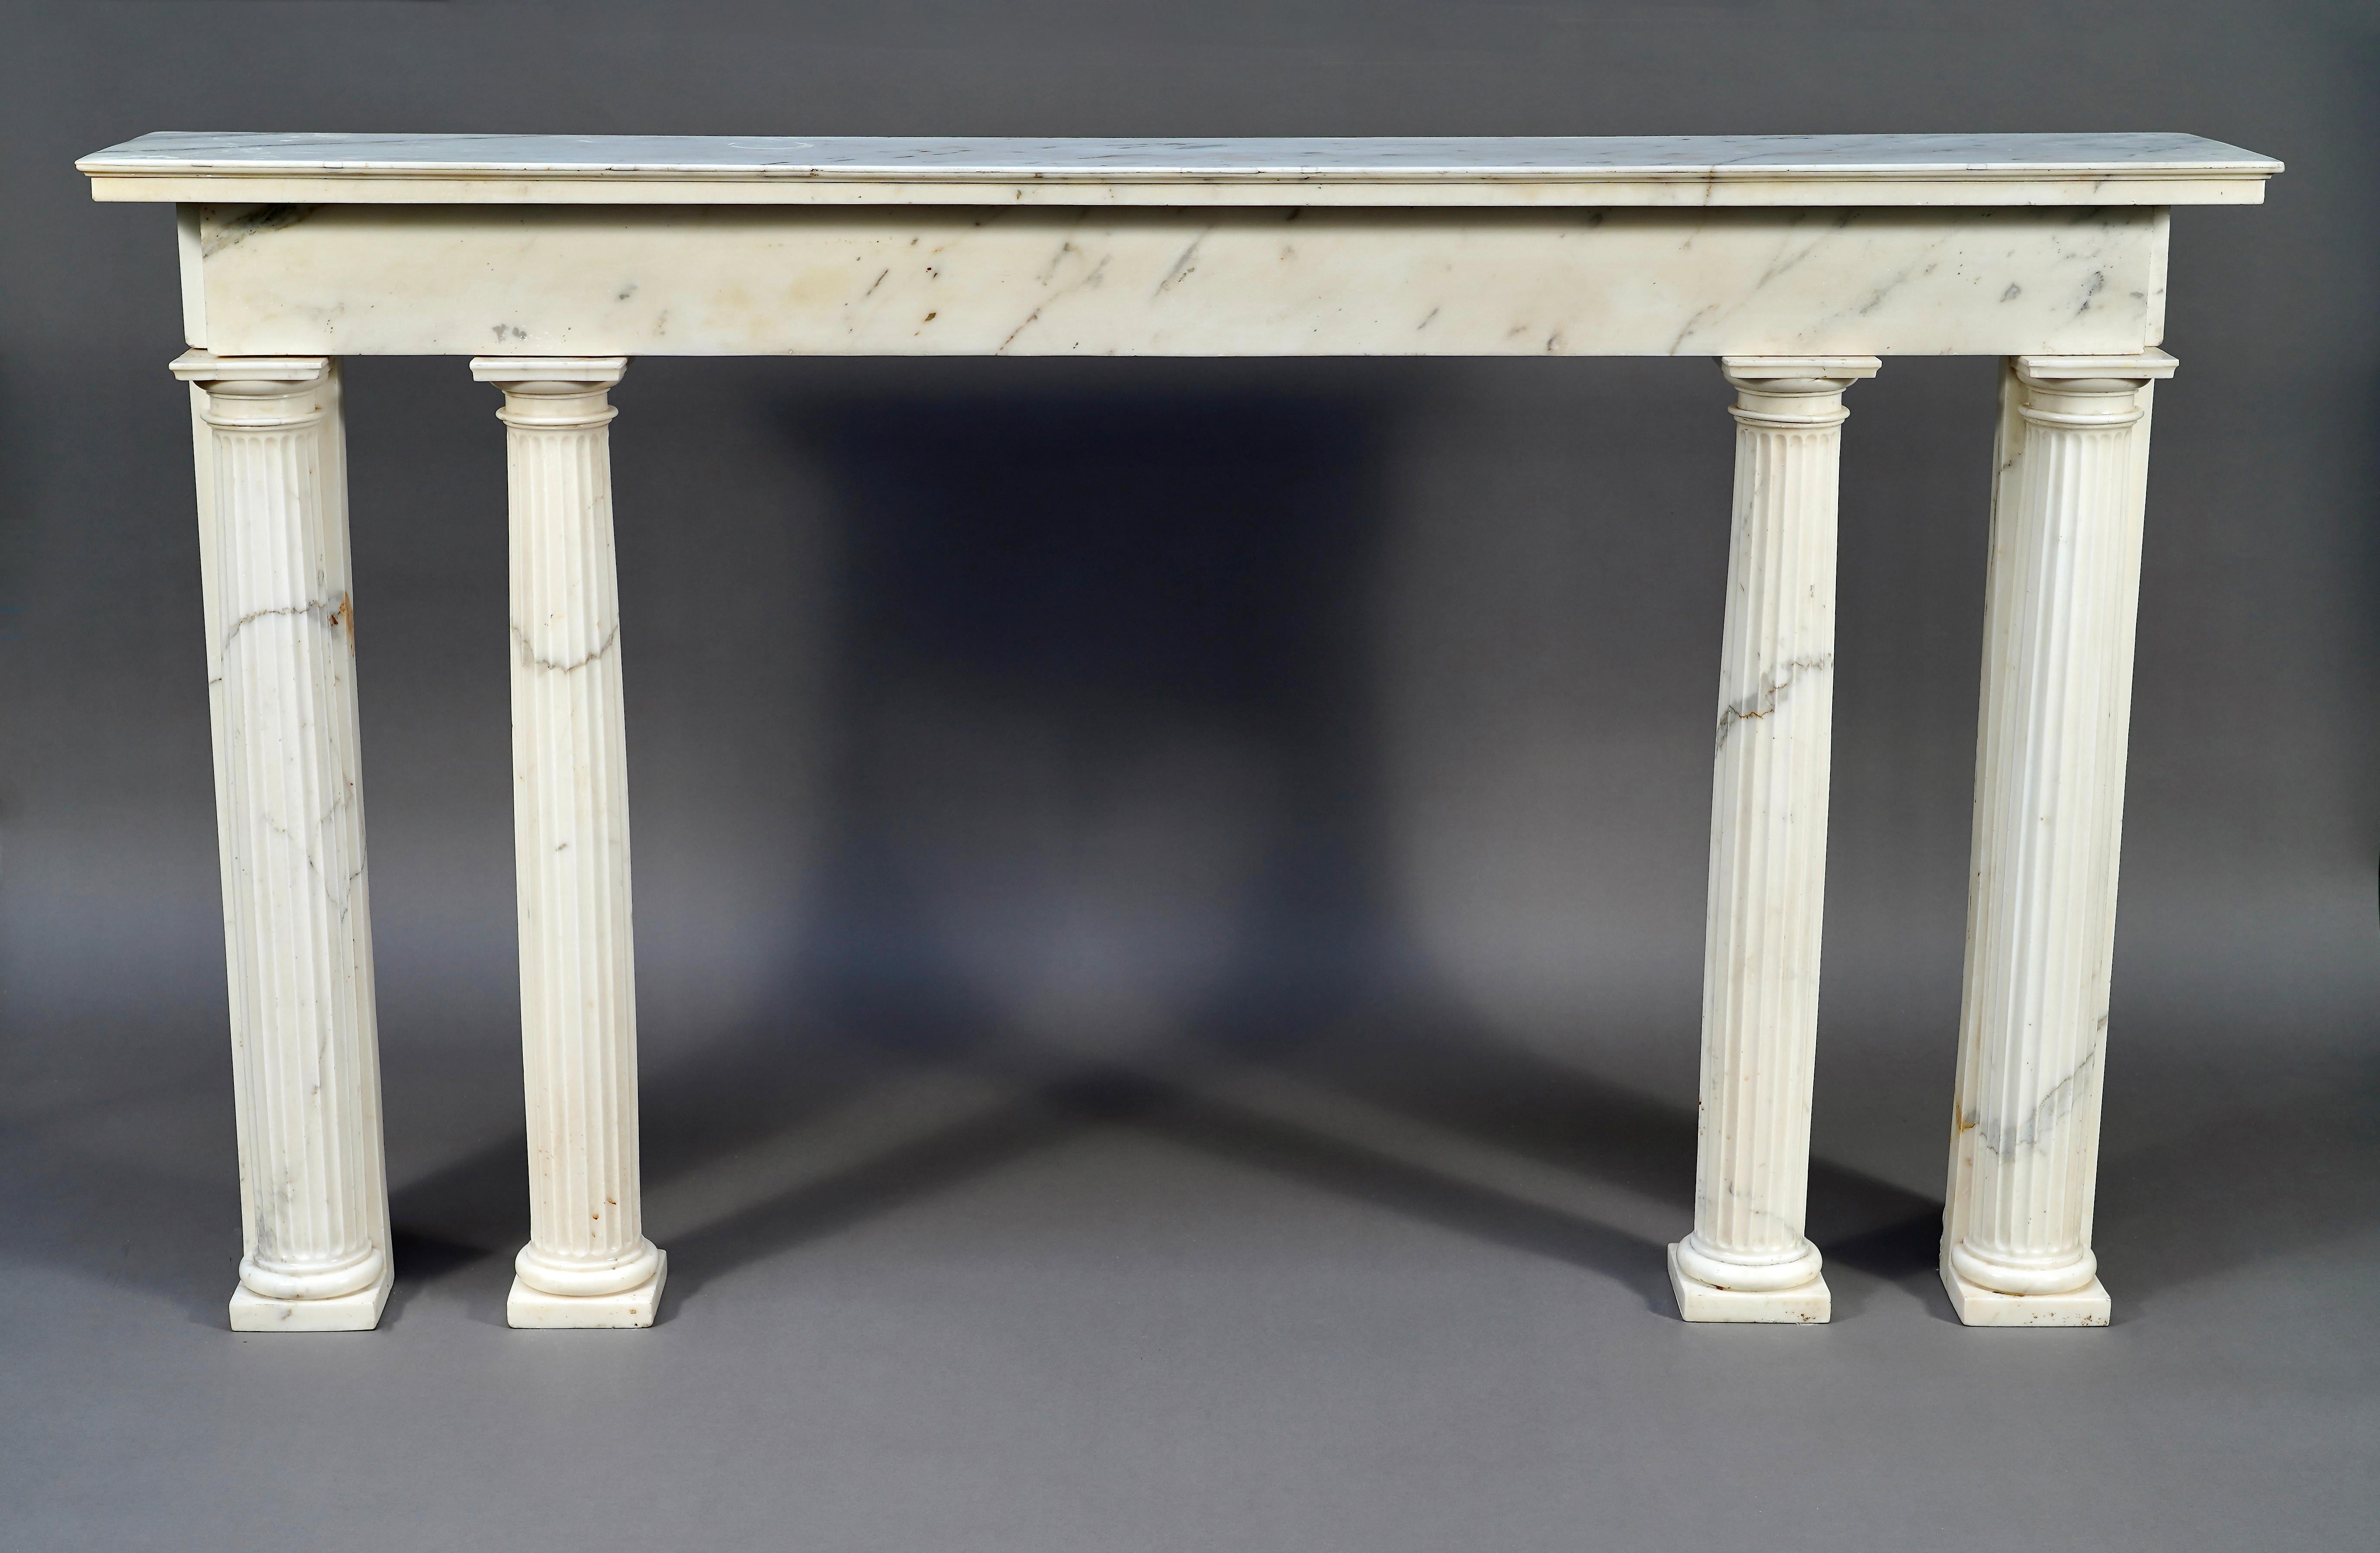 Seltene neoklassizistische Konsole aus weißem Carrara-Marmor aus der Zeit Ludwigs XVI. Der rechteckige Türsturz mit profiliertem Oberteil wird von vier freistehenden kannelierten Säulen mit dorischen Kapitellen getragen.

Die geraden Linien und der